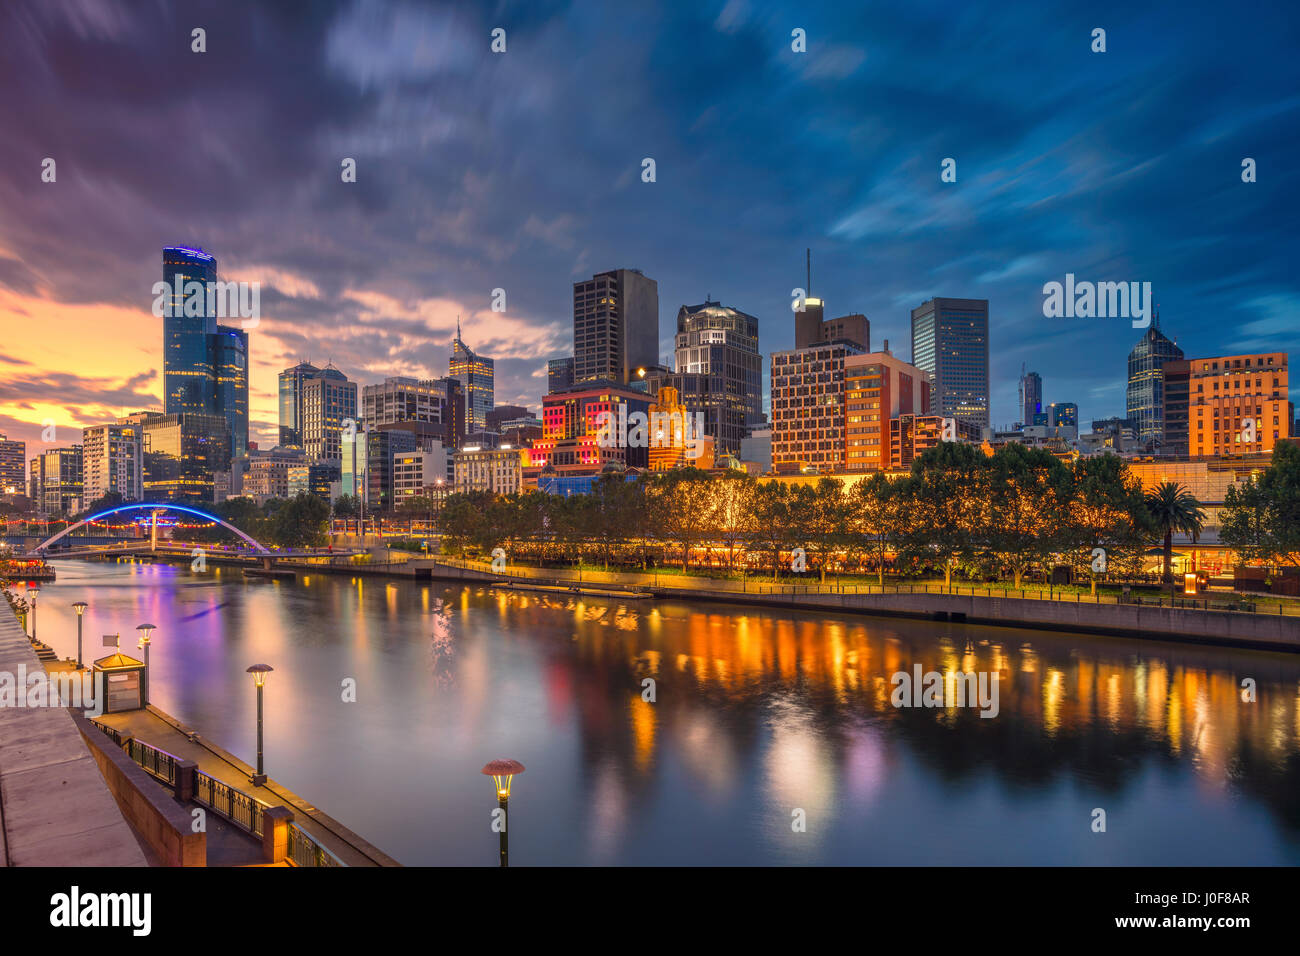 Città di Melbourne. Immagine di paesaggio cittadino di Melbourne, Australia durante il tramonto spettacolare. Foto Stock